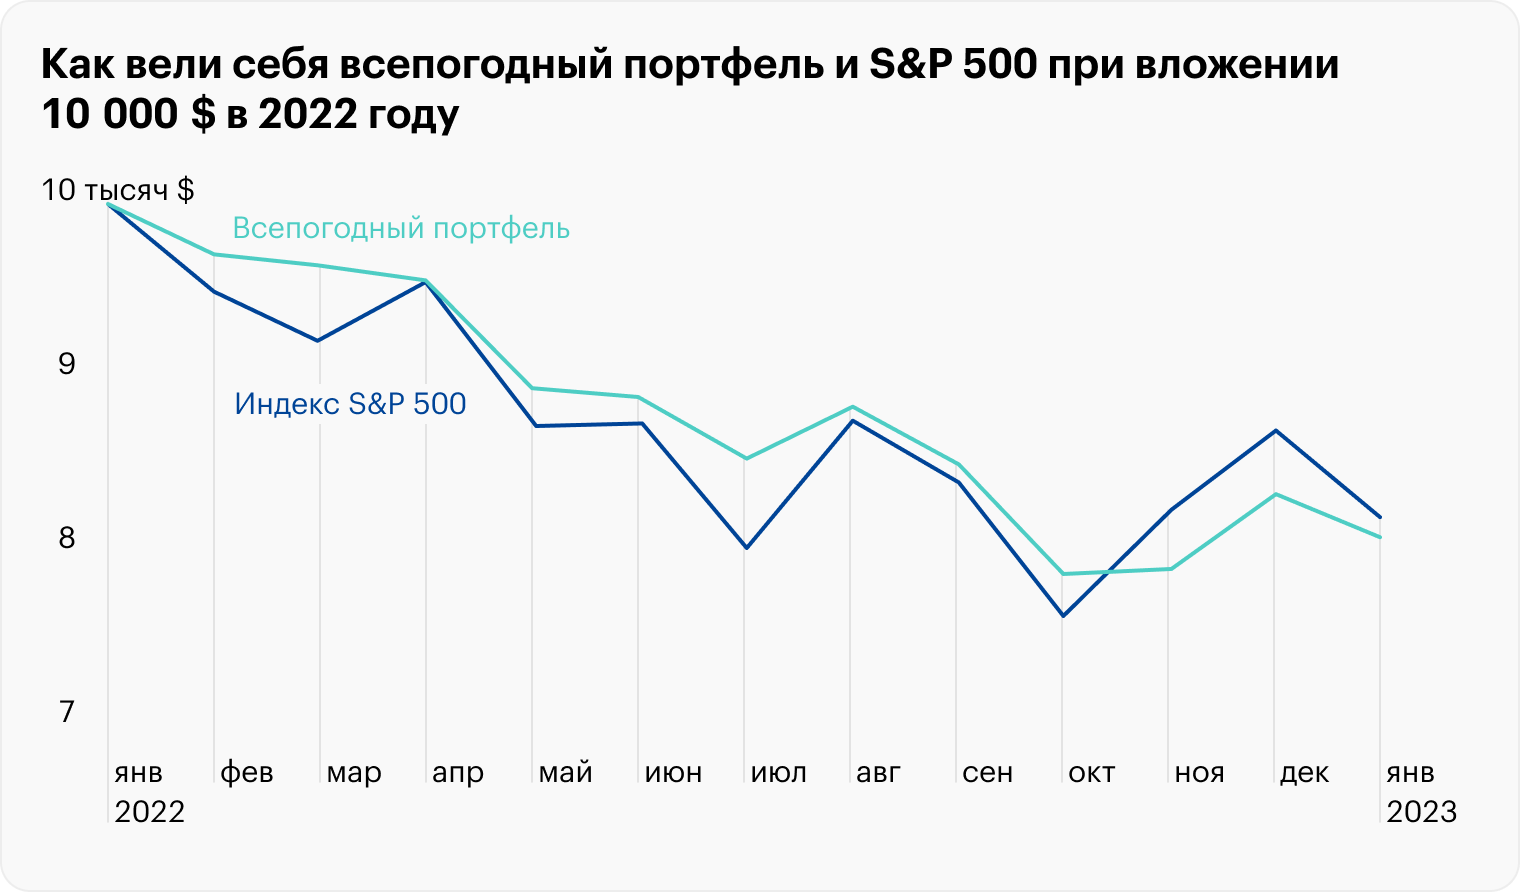 Всепогодный портфель в 2022 году тоже падал, только более плавно и медленно. В сентябре S&P 500 достиг минимумов и к декабрю успел отскочить. Источник: Portfolio Visualizer